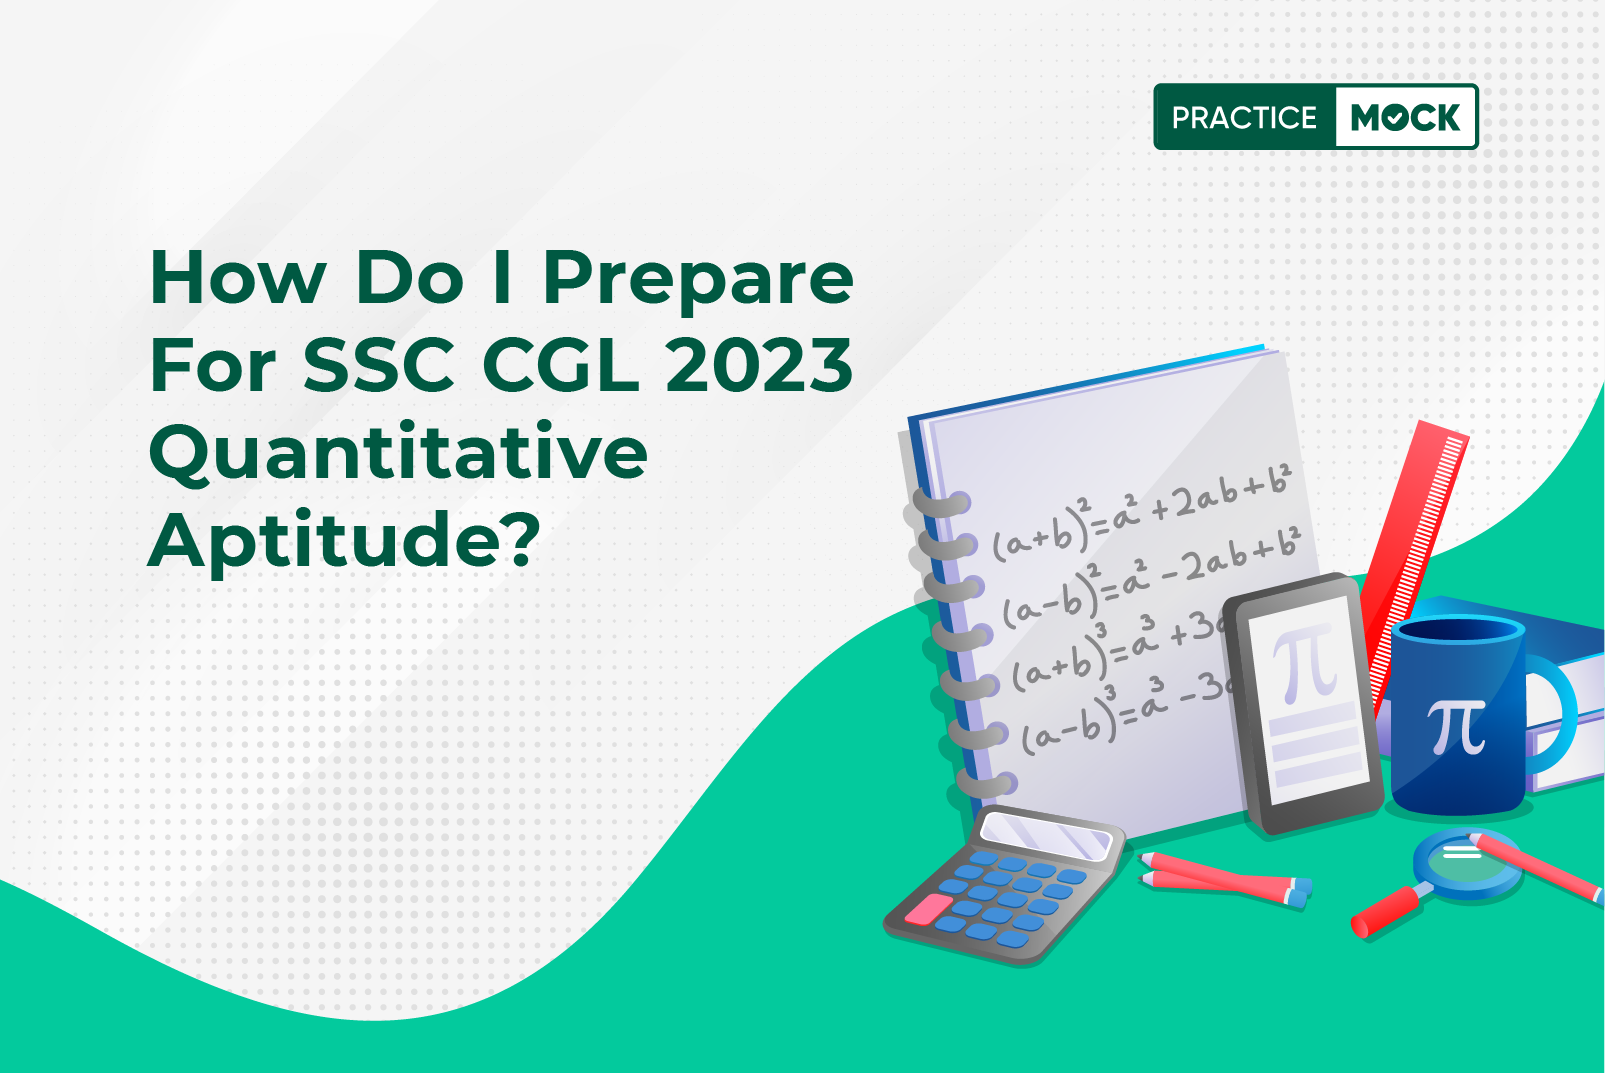 How do I Prepare for SSC CGL 2023 Quantitative Aptitude?